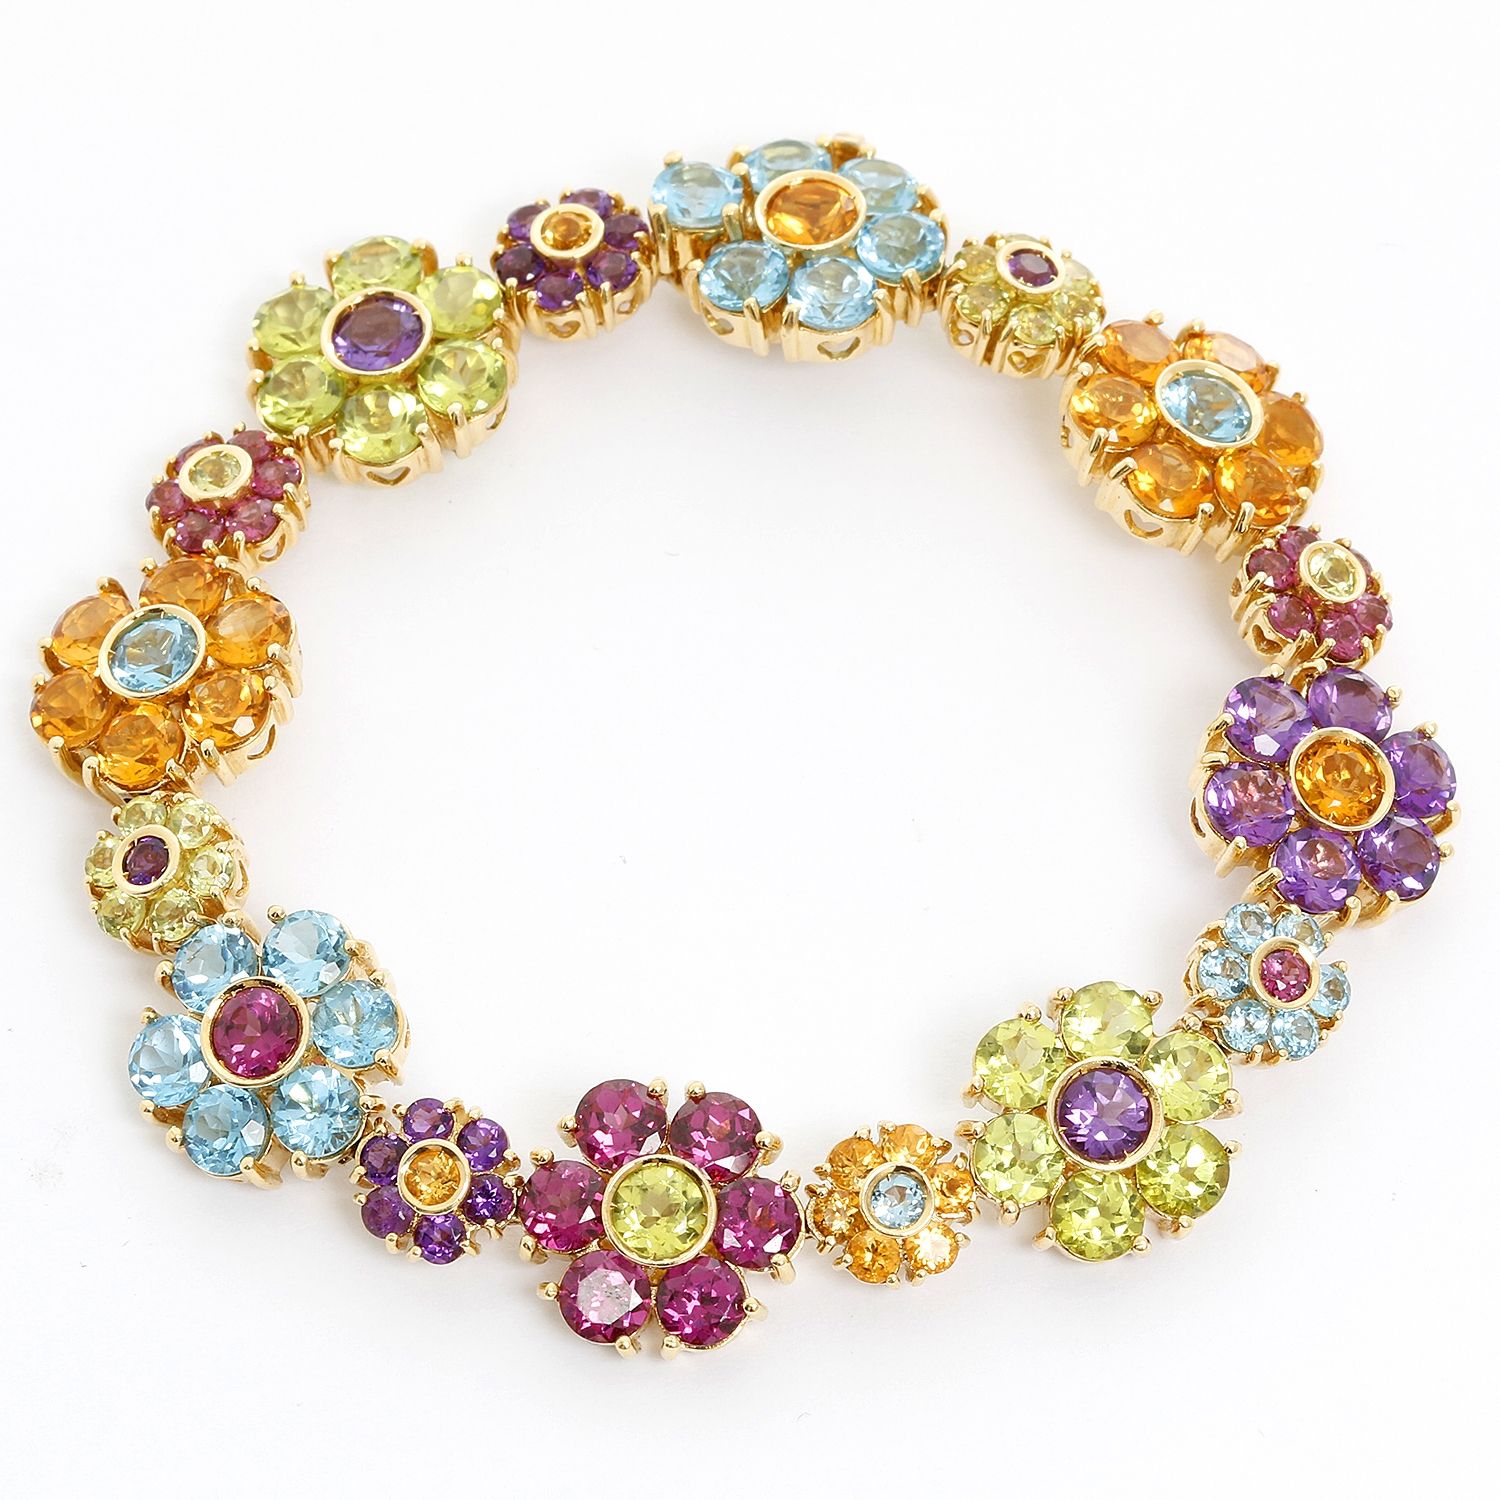 German Silver oxidized Flower Bracelet - The Sassy Jewels